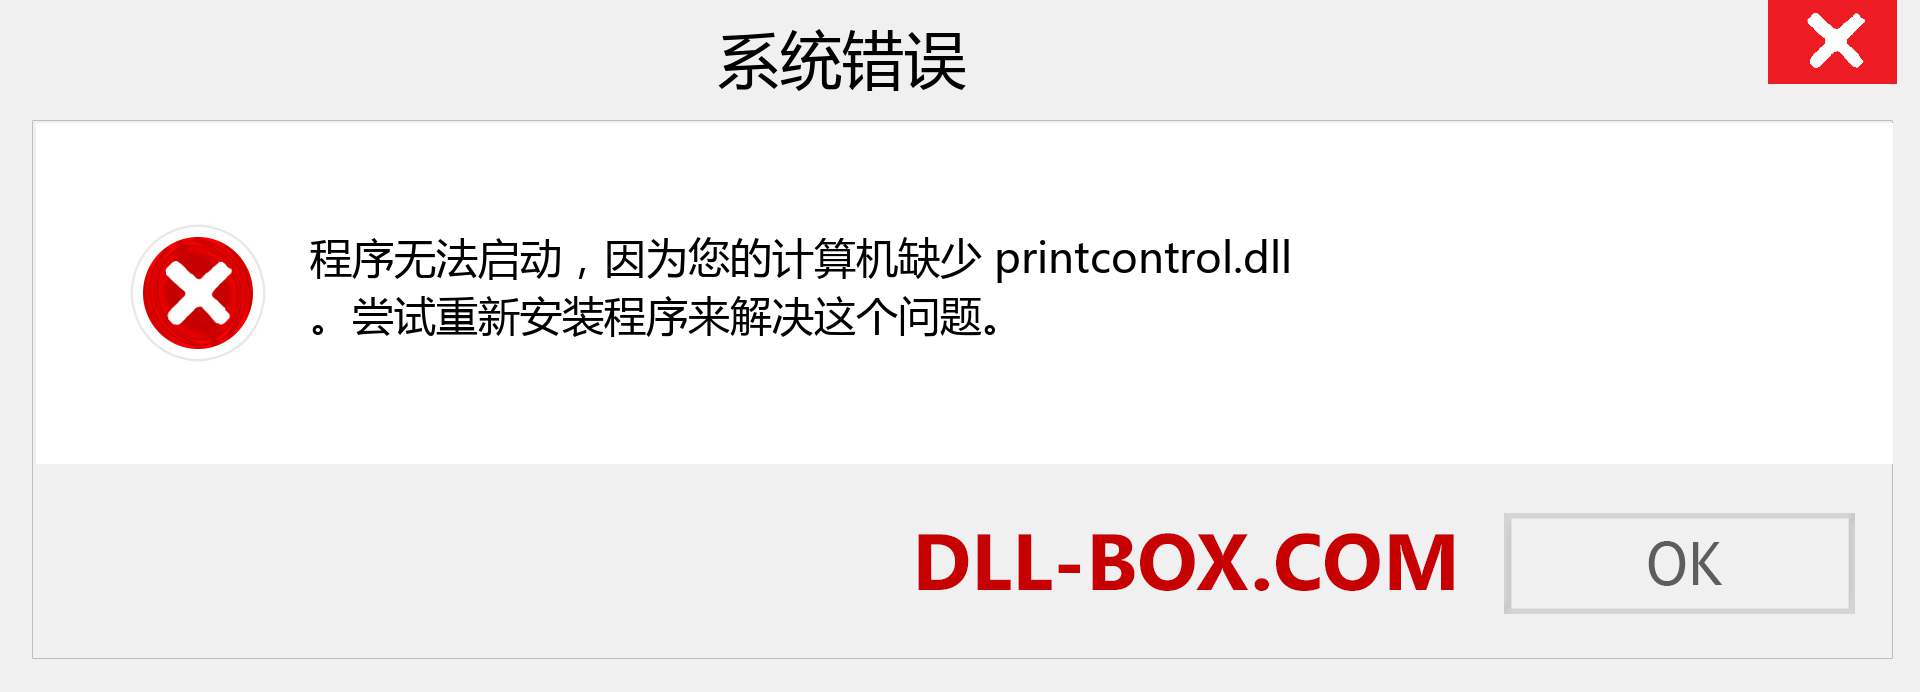 printcontrol.dll 文件丢失？。 适用于 Windows 7、8、10 的下载 - 修复 Windows、照片、图像上的 printcontrol dll 丢失错误